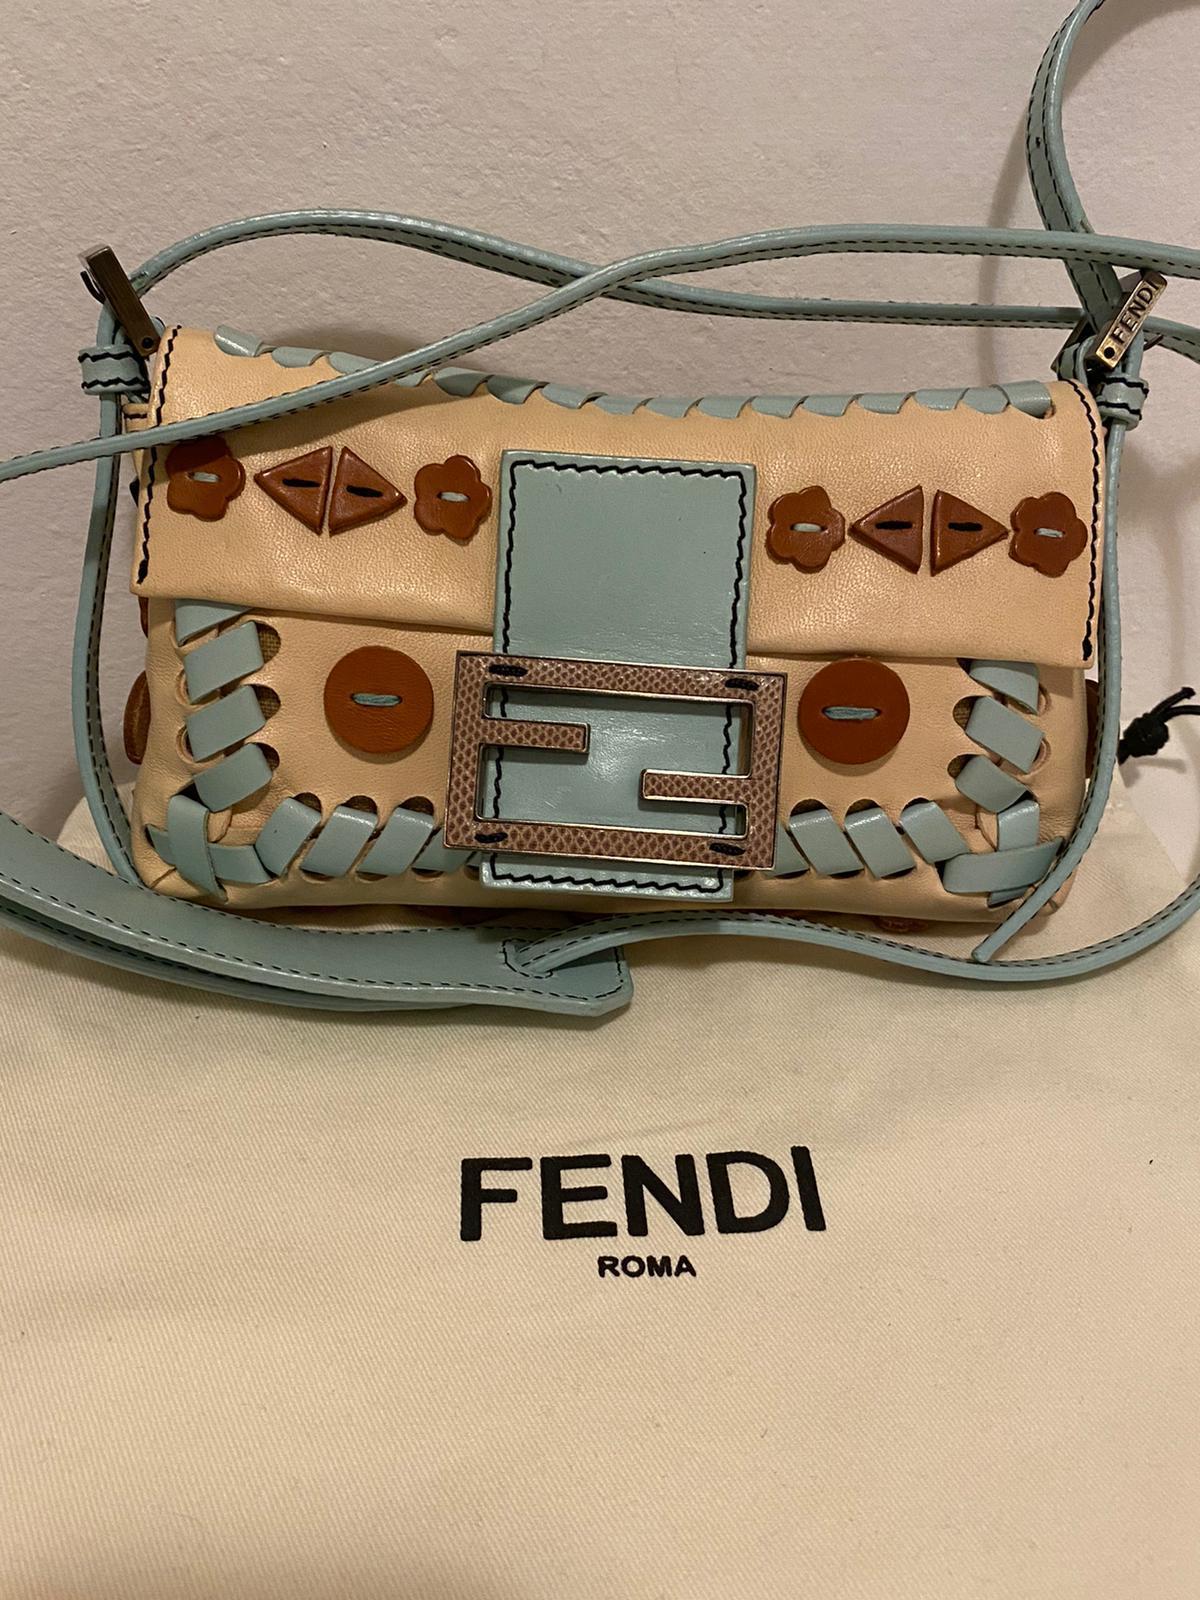 Fendi baguette mini beige and light blue leather shoulder bag NWOT 1